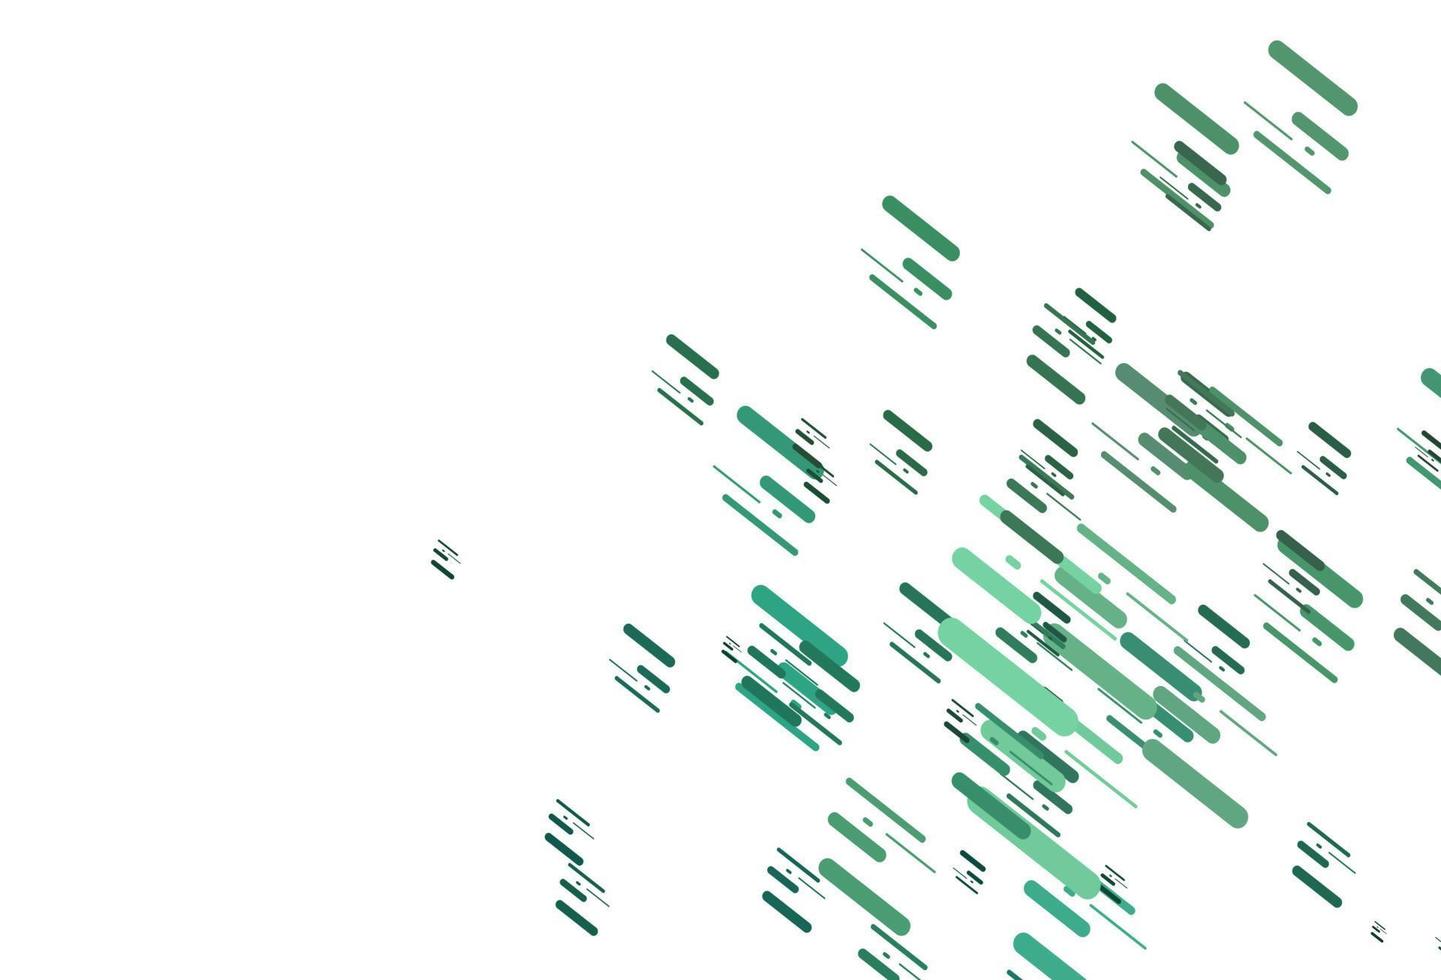 fond de vecteur vert clair avec des lignes droites.